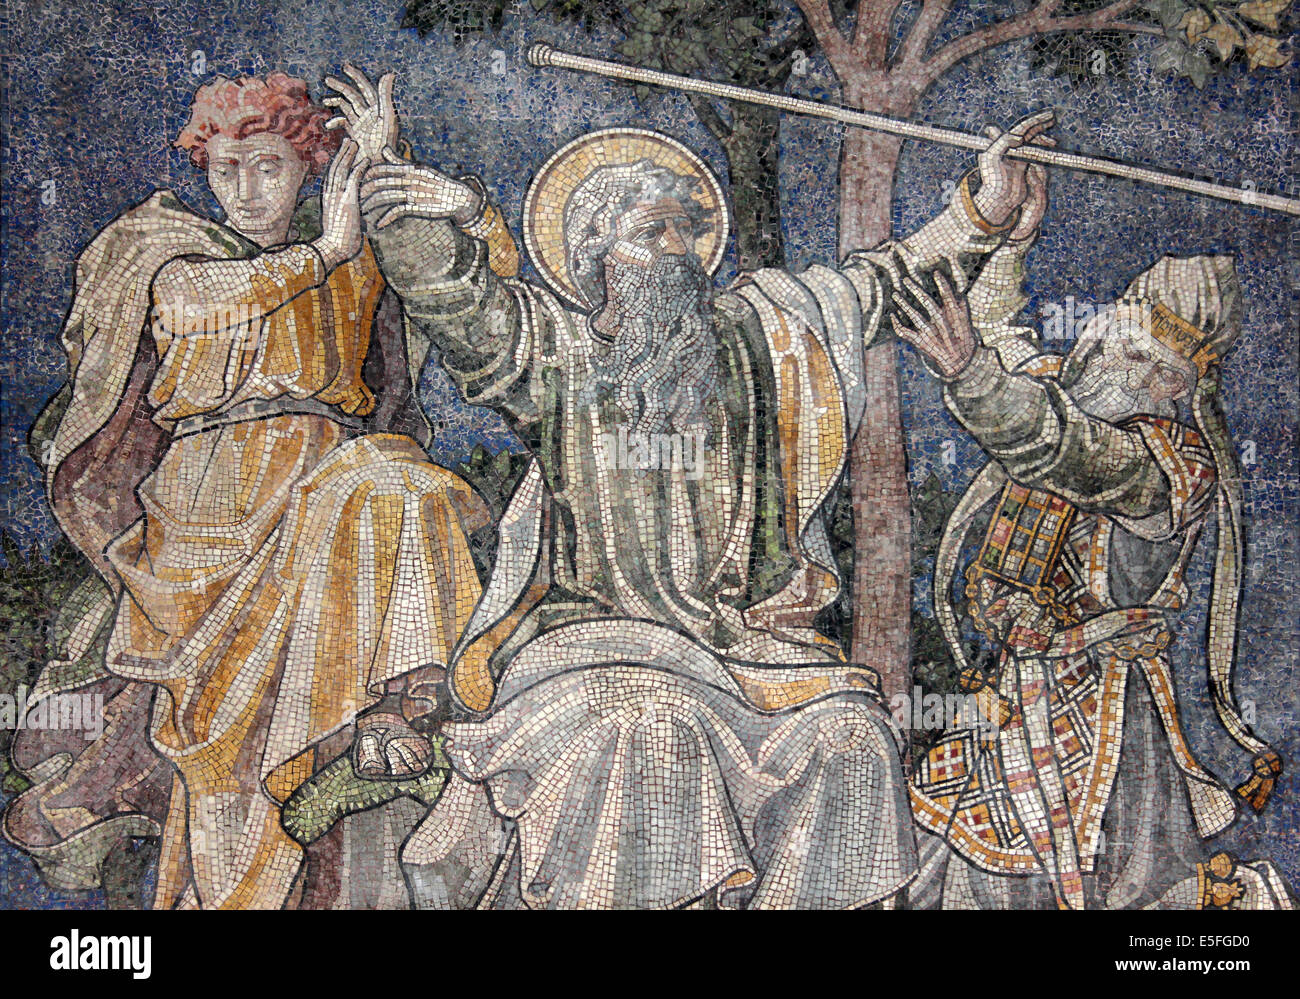 Uno dei mosaici in Chester Cathedral raffiguranti varie scene del Vecchio Testamento. Questo uno con Mosè. Foto Stock